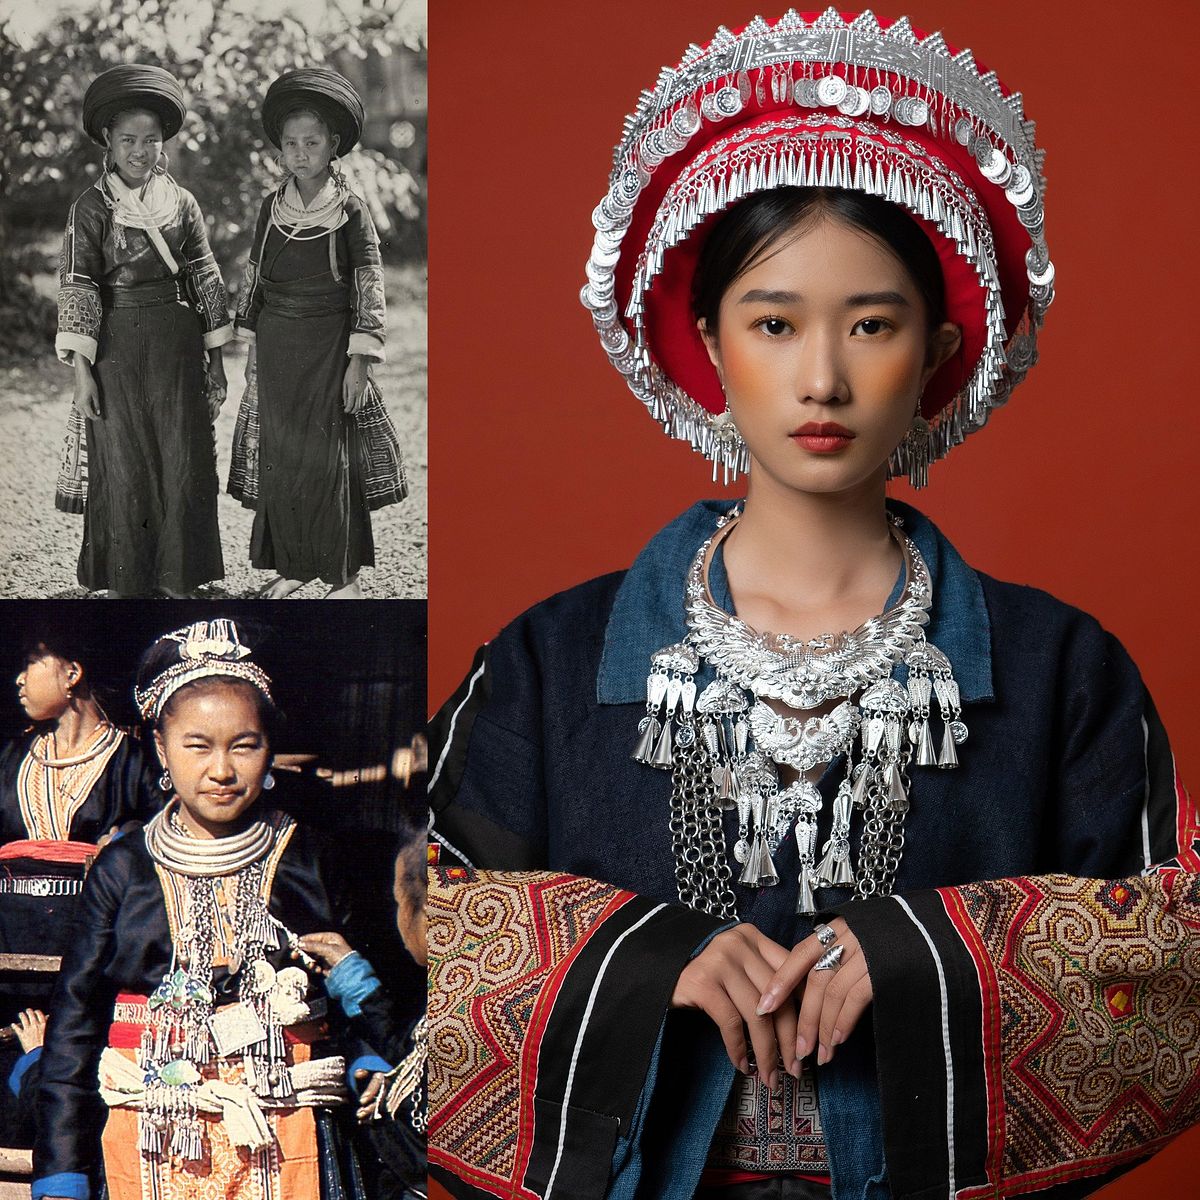 H\'Mông là một dân tộc đặc biệt với trang phục và văn hóa độc đáo. Hãy cùng tìm hiểu về trang phục truyền thống của họ, từ những chiếc áo dài và váy ngắn đến những phụ kiện trang trí đầy màu sắc. Bạn sẽ ấn tượng với sự độc đáo và tinh tế mang đến bởi trang phục của H\'Mông.